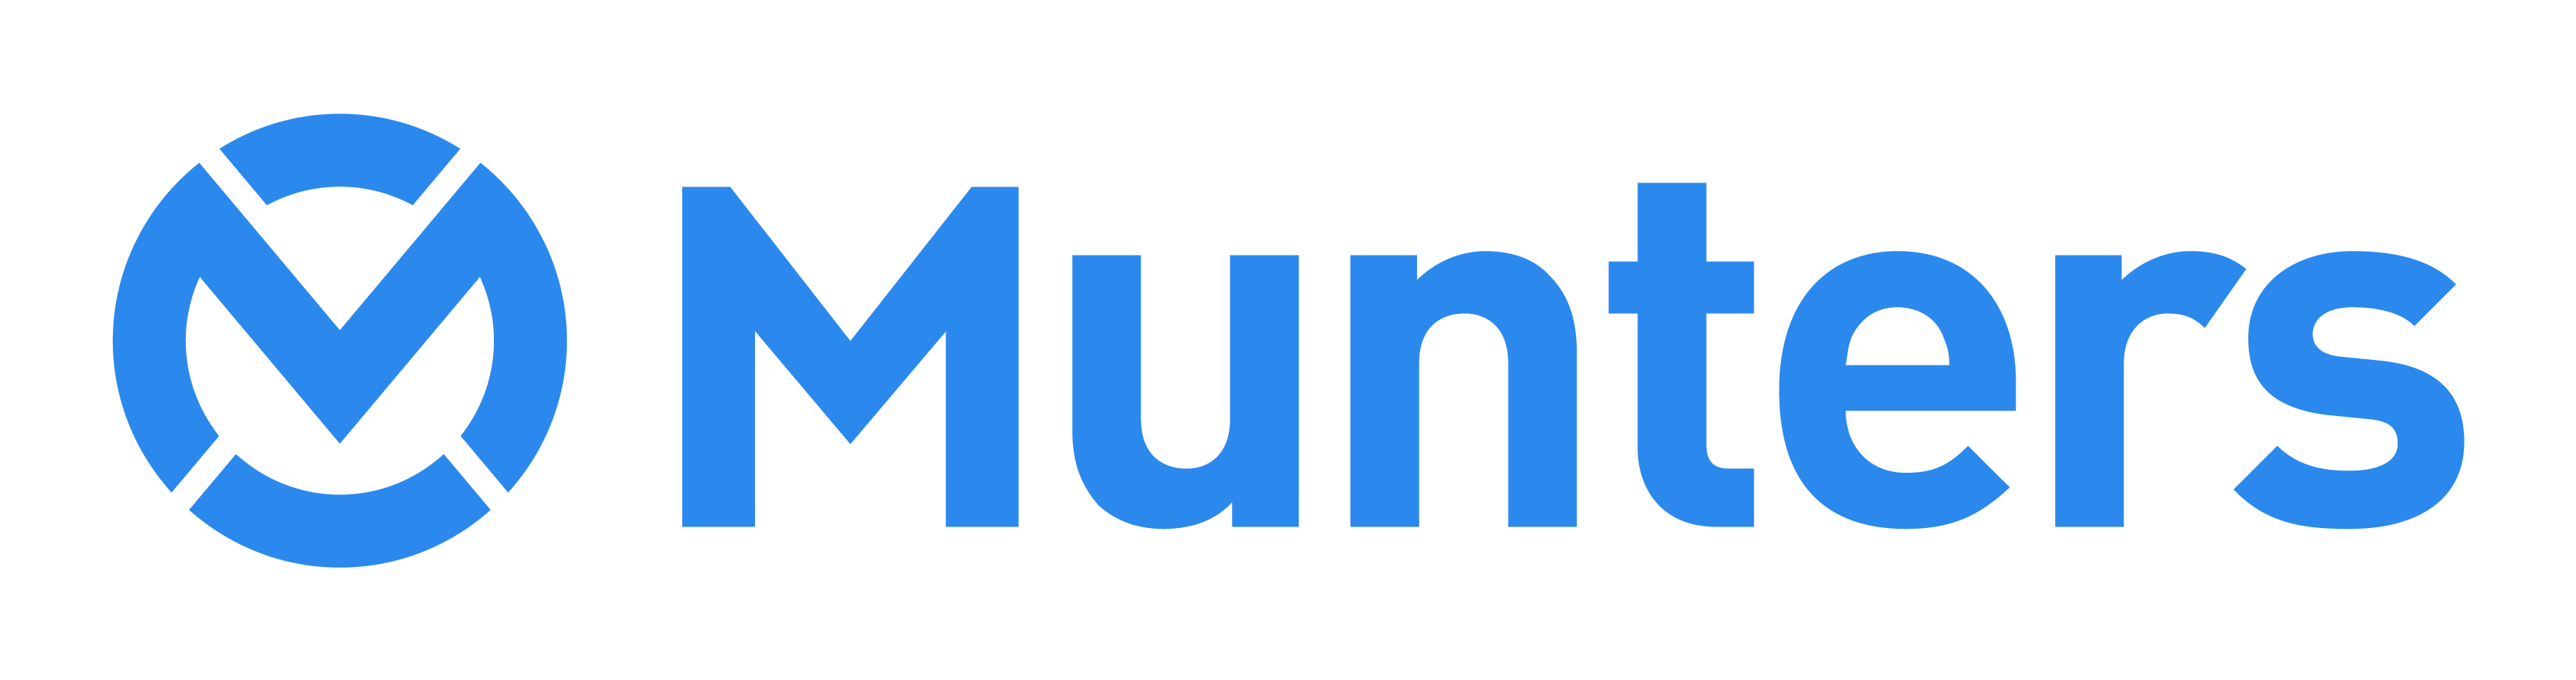 munters logo rgb 2023.png logo